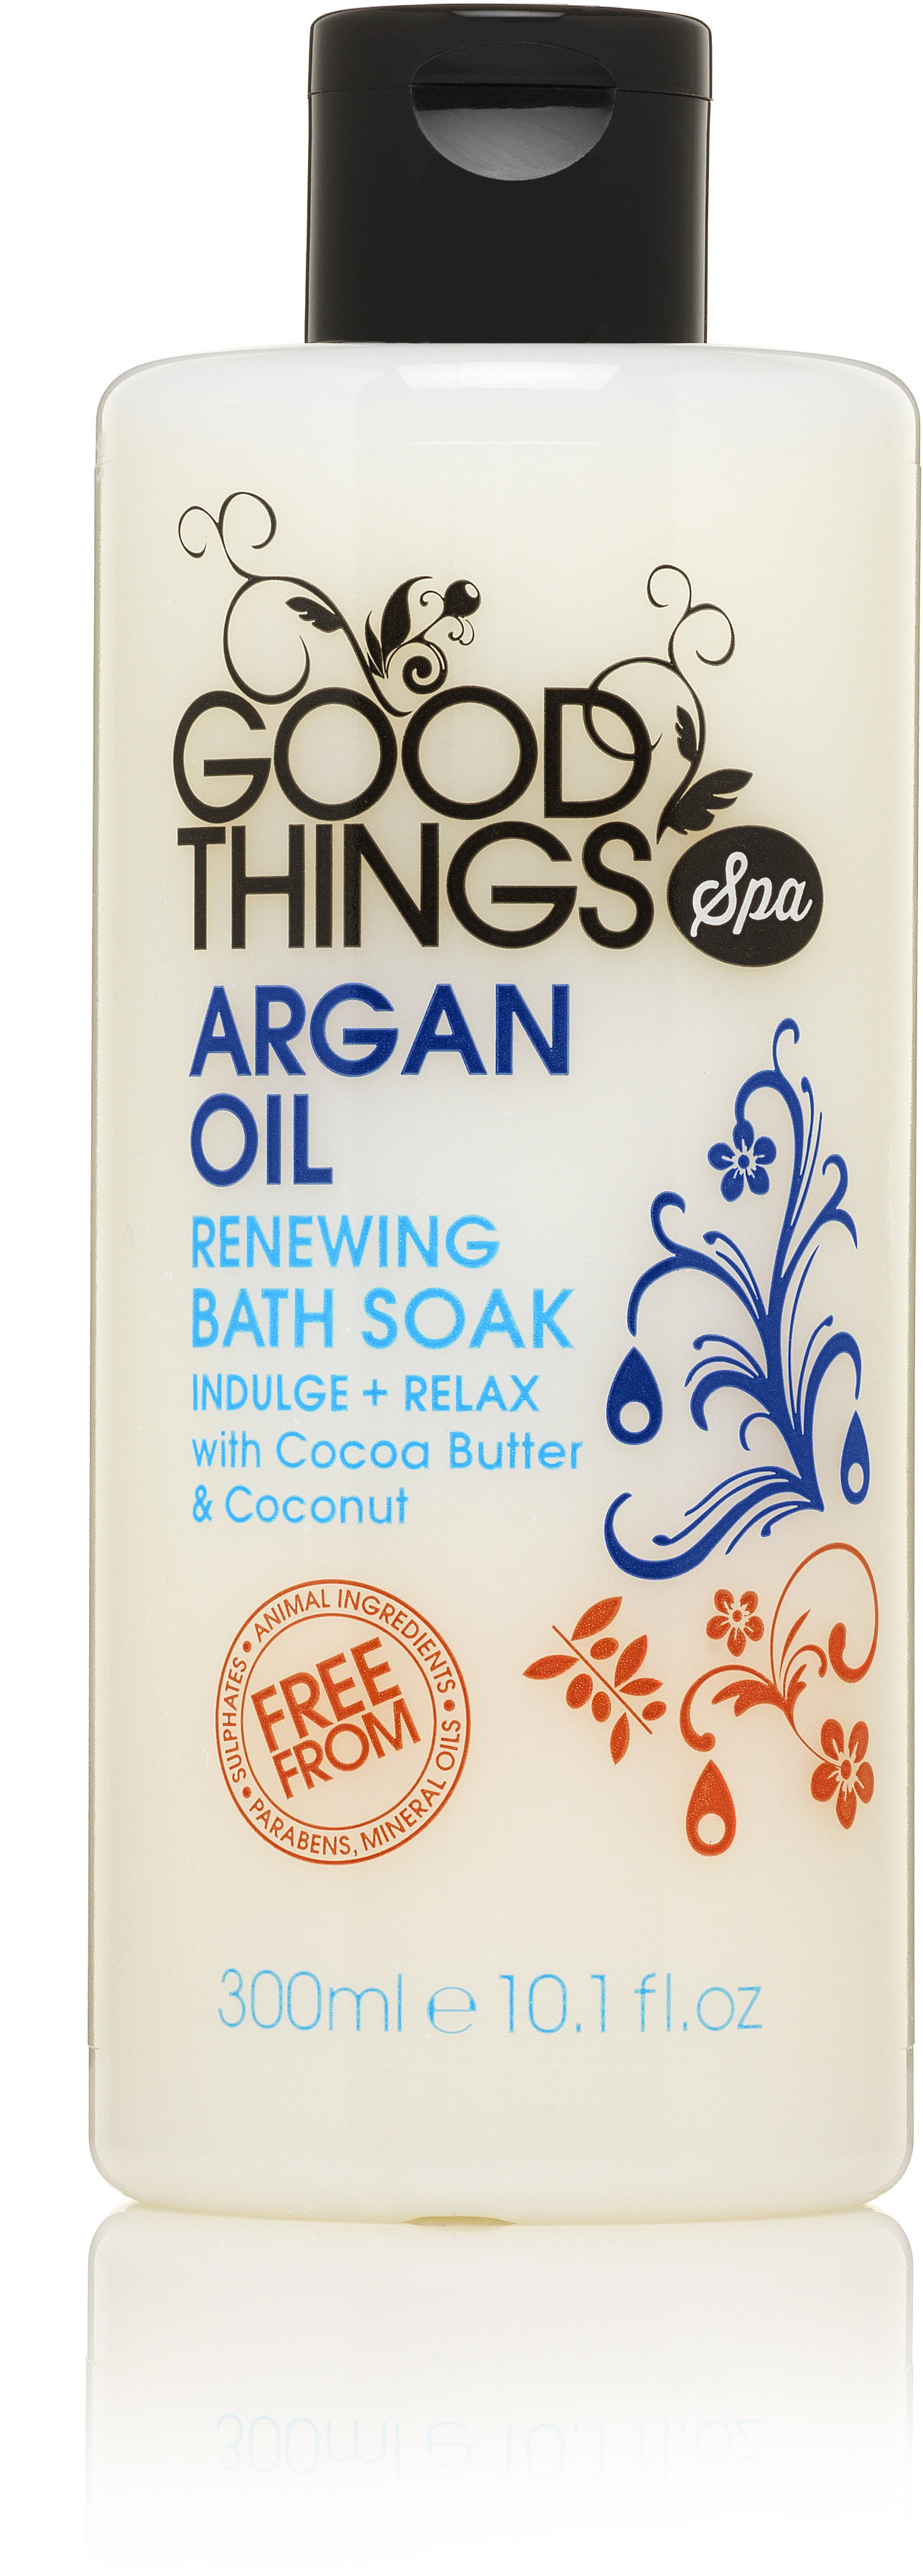 Good Things Argan Oil Bath Soak 300ml